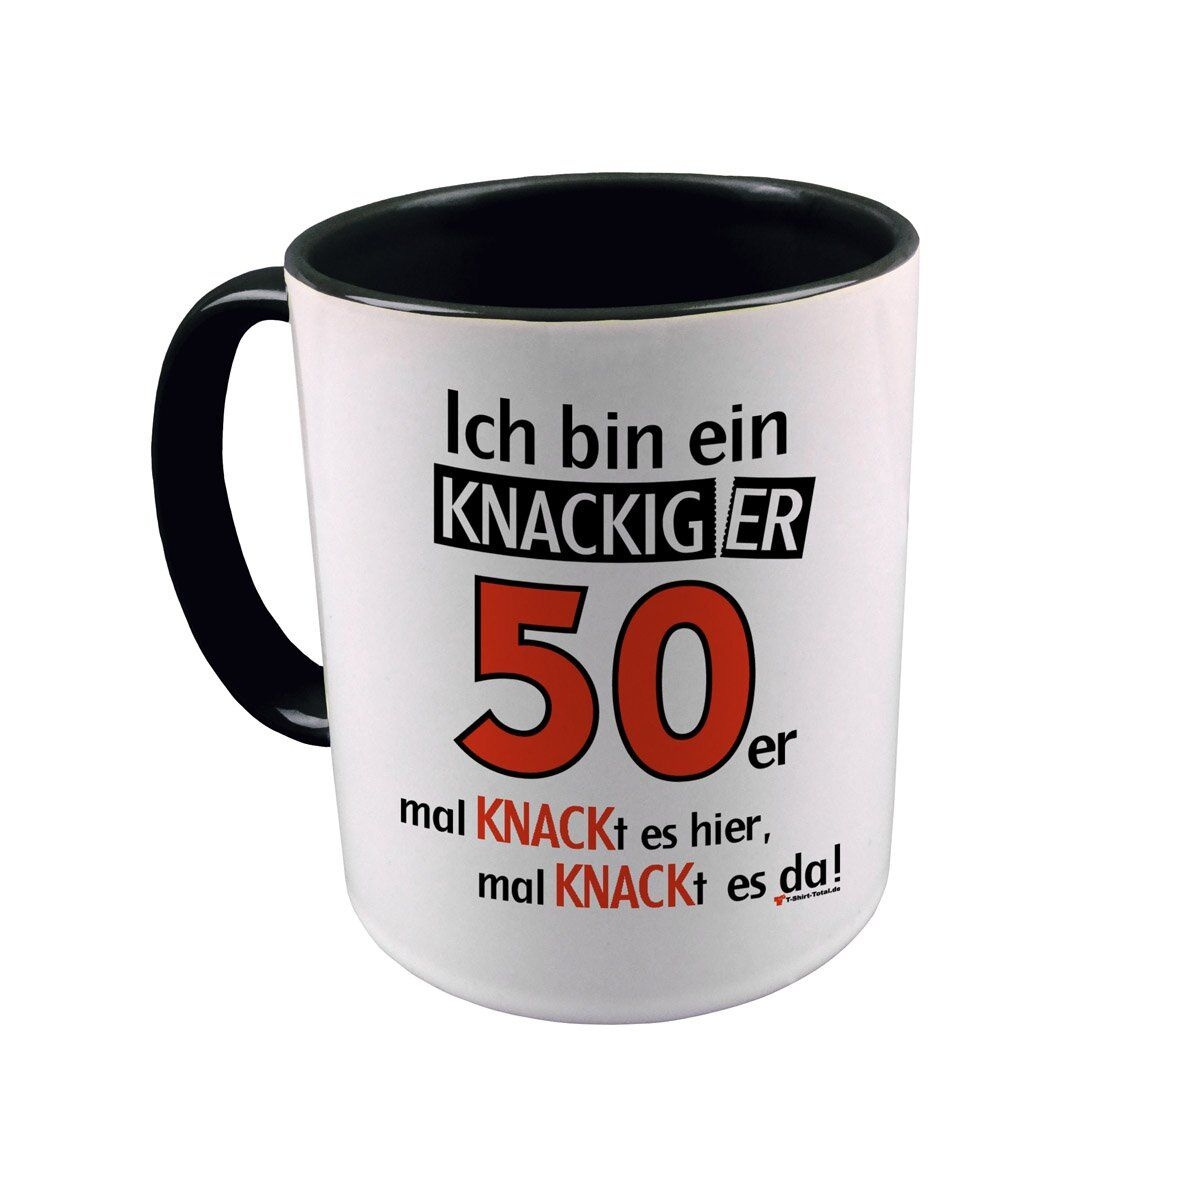 Knackiger 50er Tasse schwarz / weiß